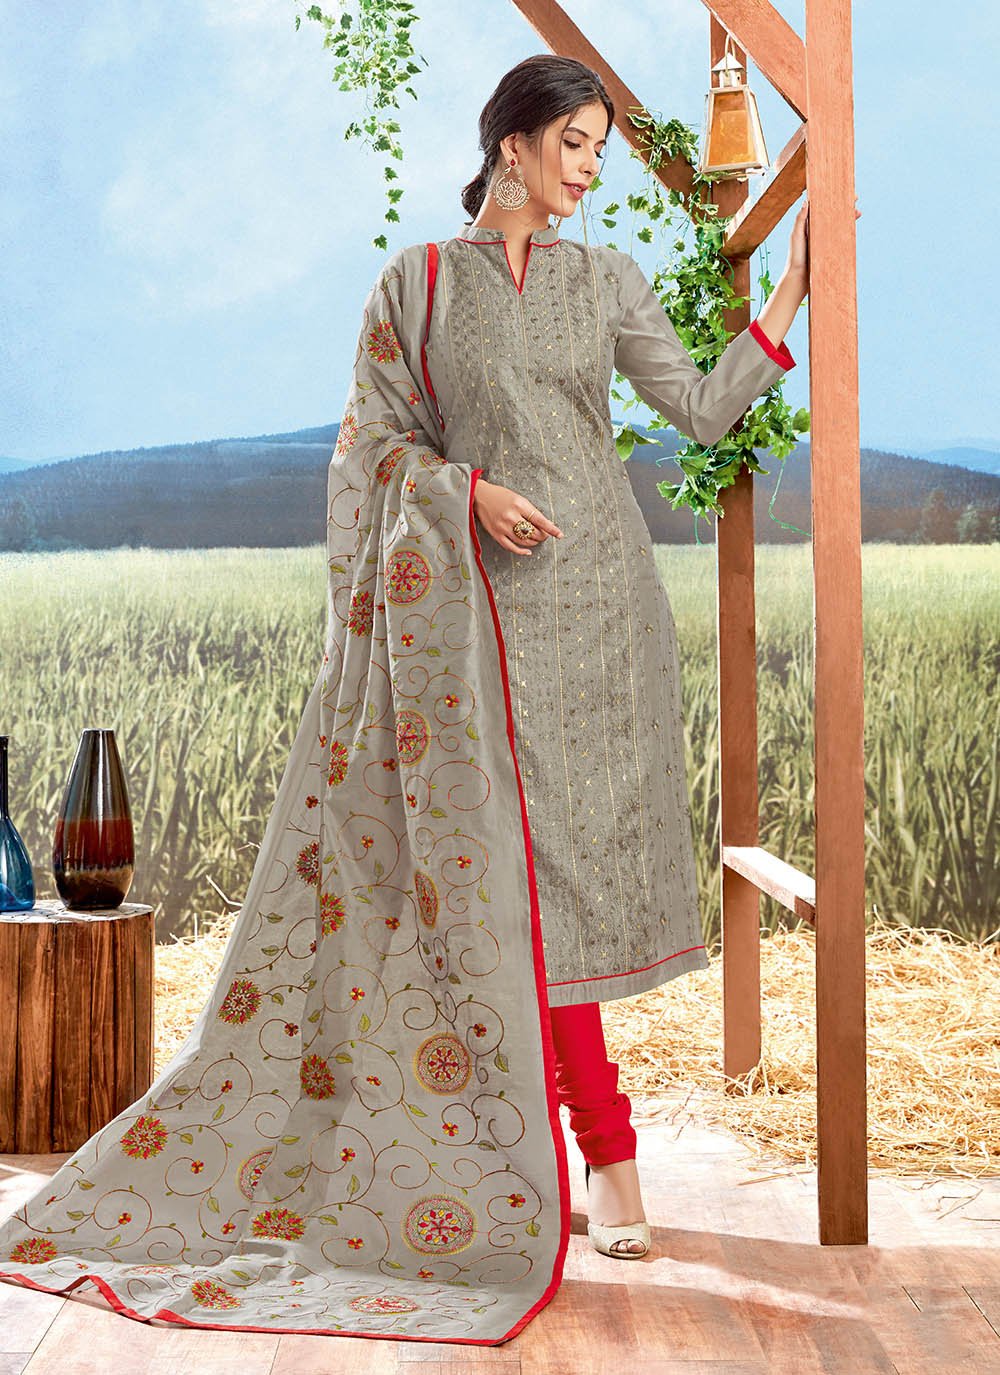 Explore Exquisite Churidar Suits & Dresses at Sareesaga